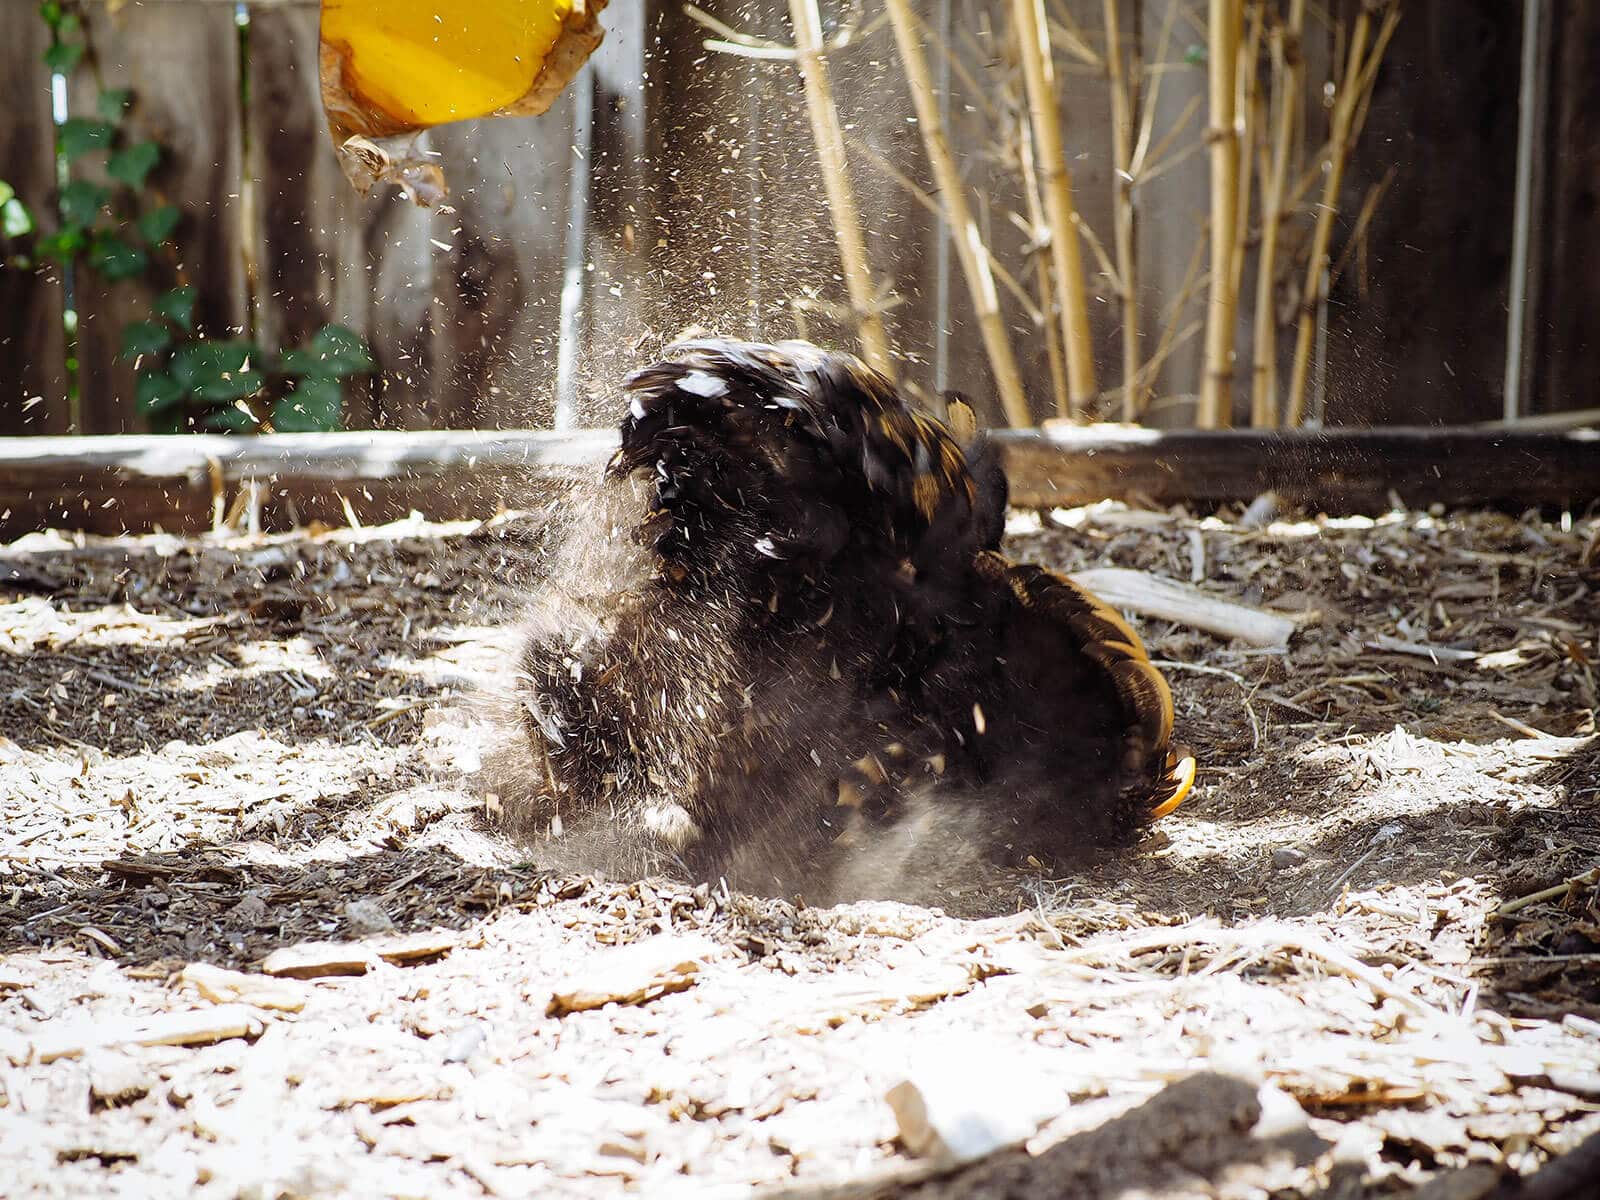 Cochin hen dust bathing in mulch